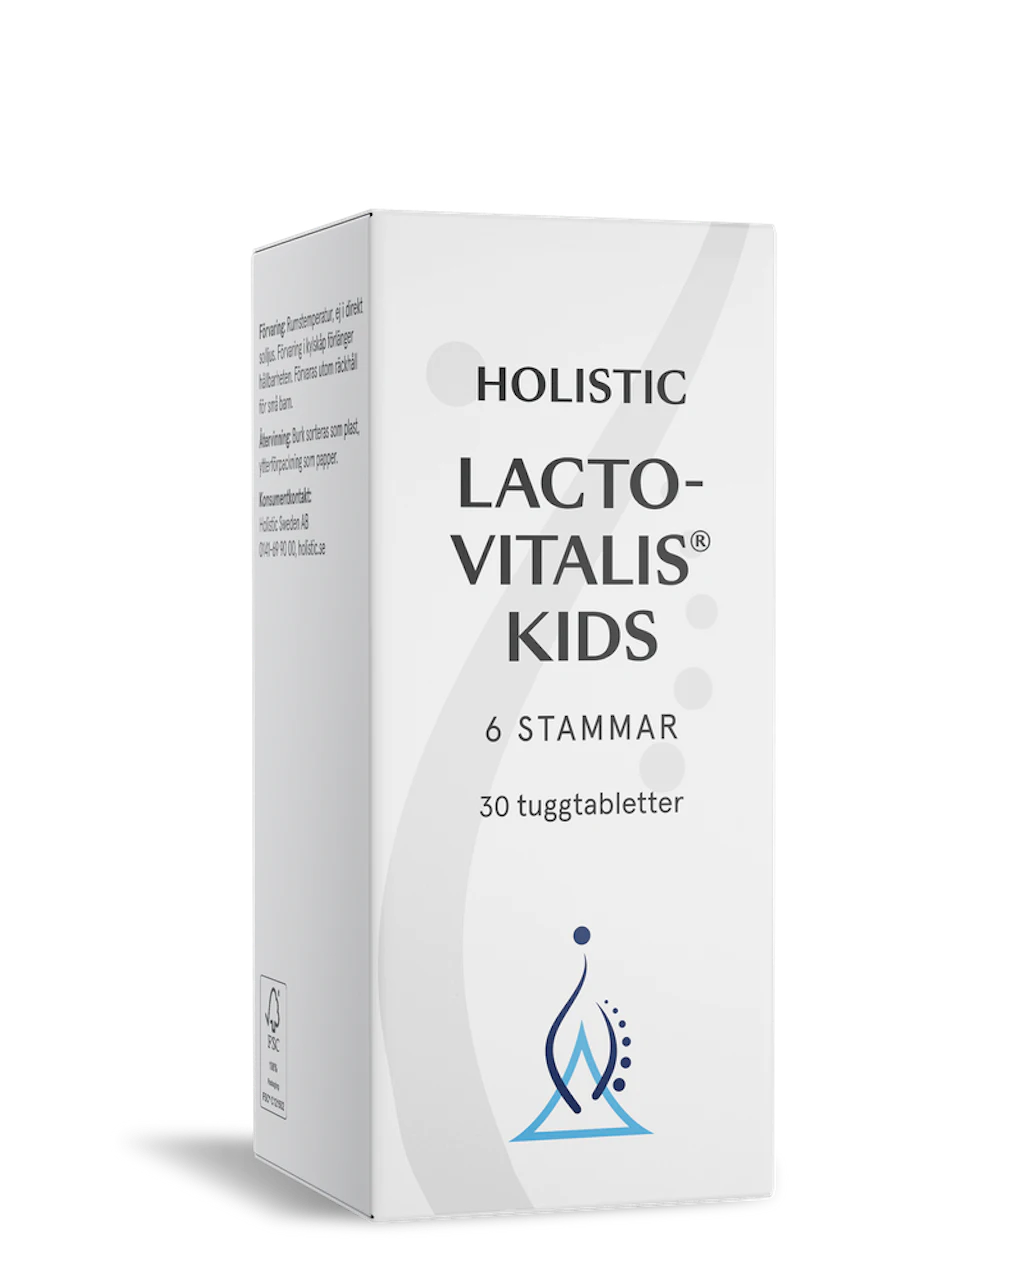 Lactovitalis Kids 30 tuggtabletter Holistic